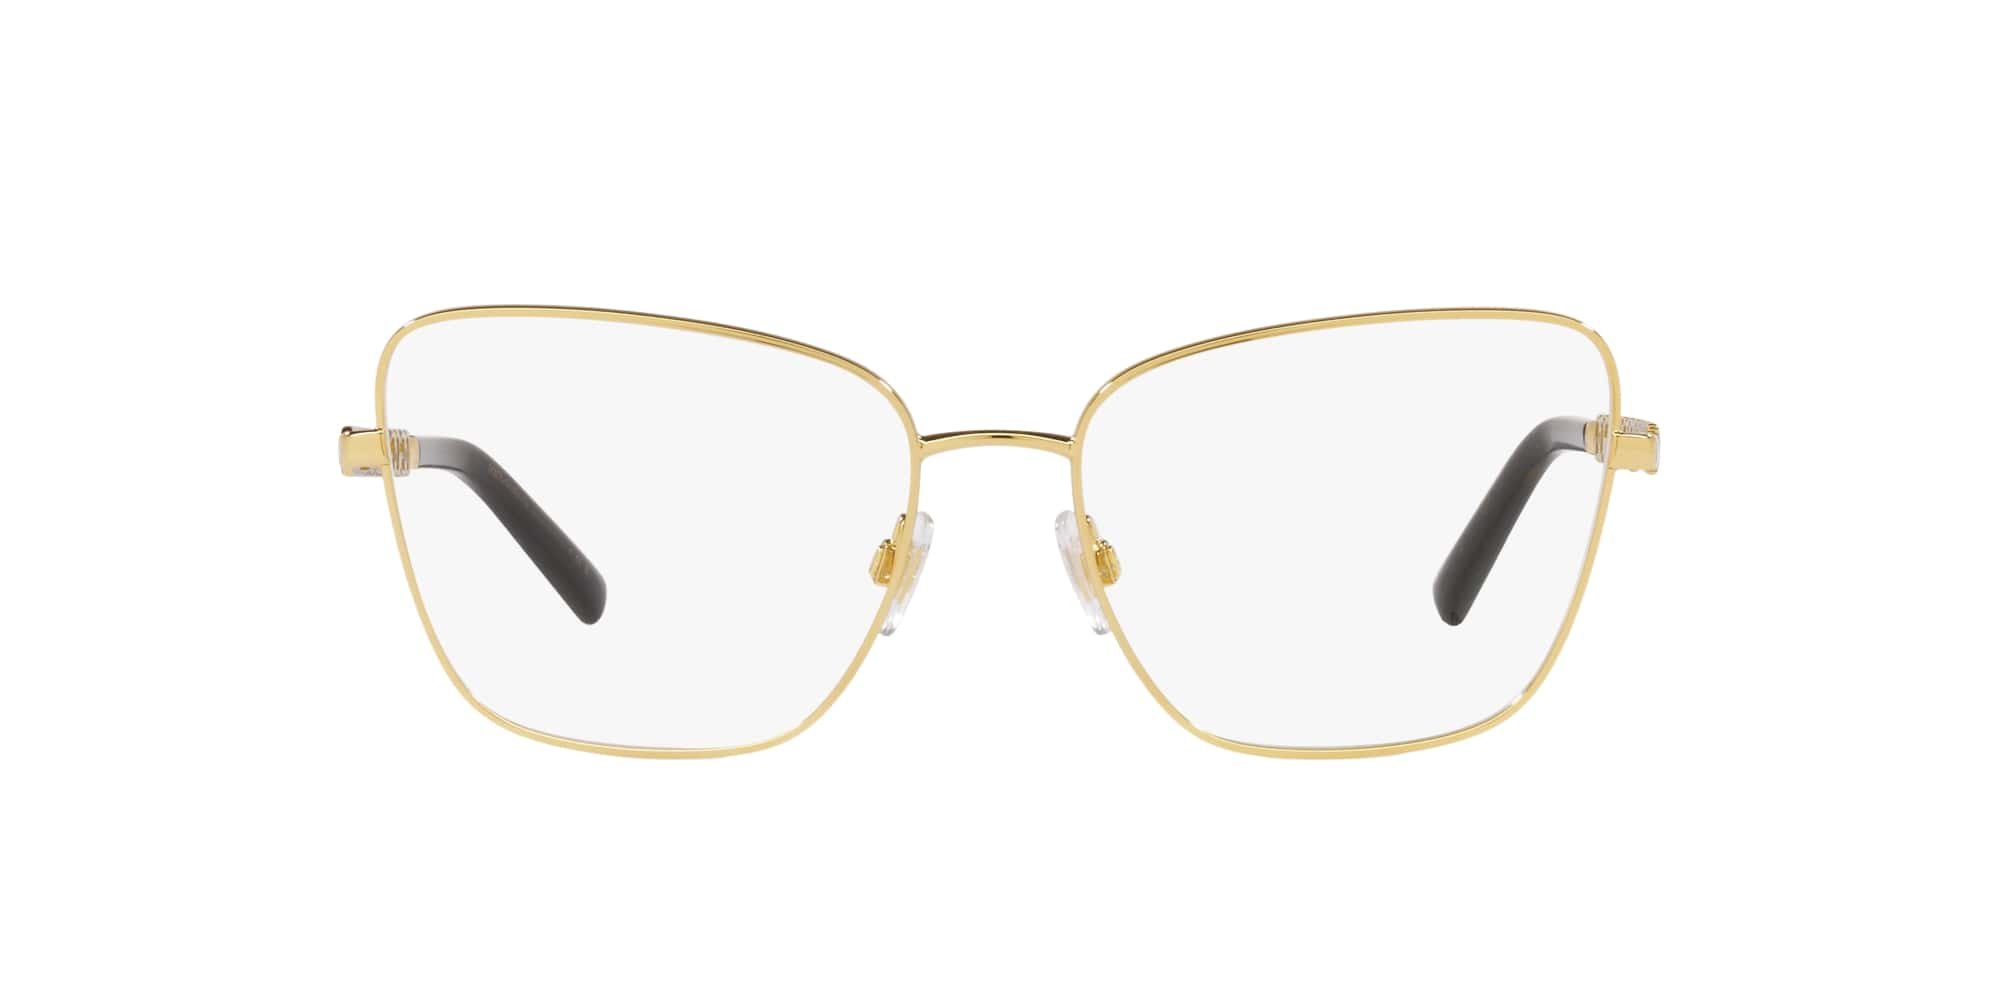 Das Bild zeigt die Korrektionsbrille DG1346 02 von der Marke D&G in gold.